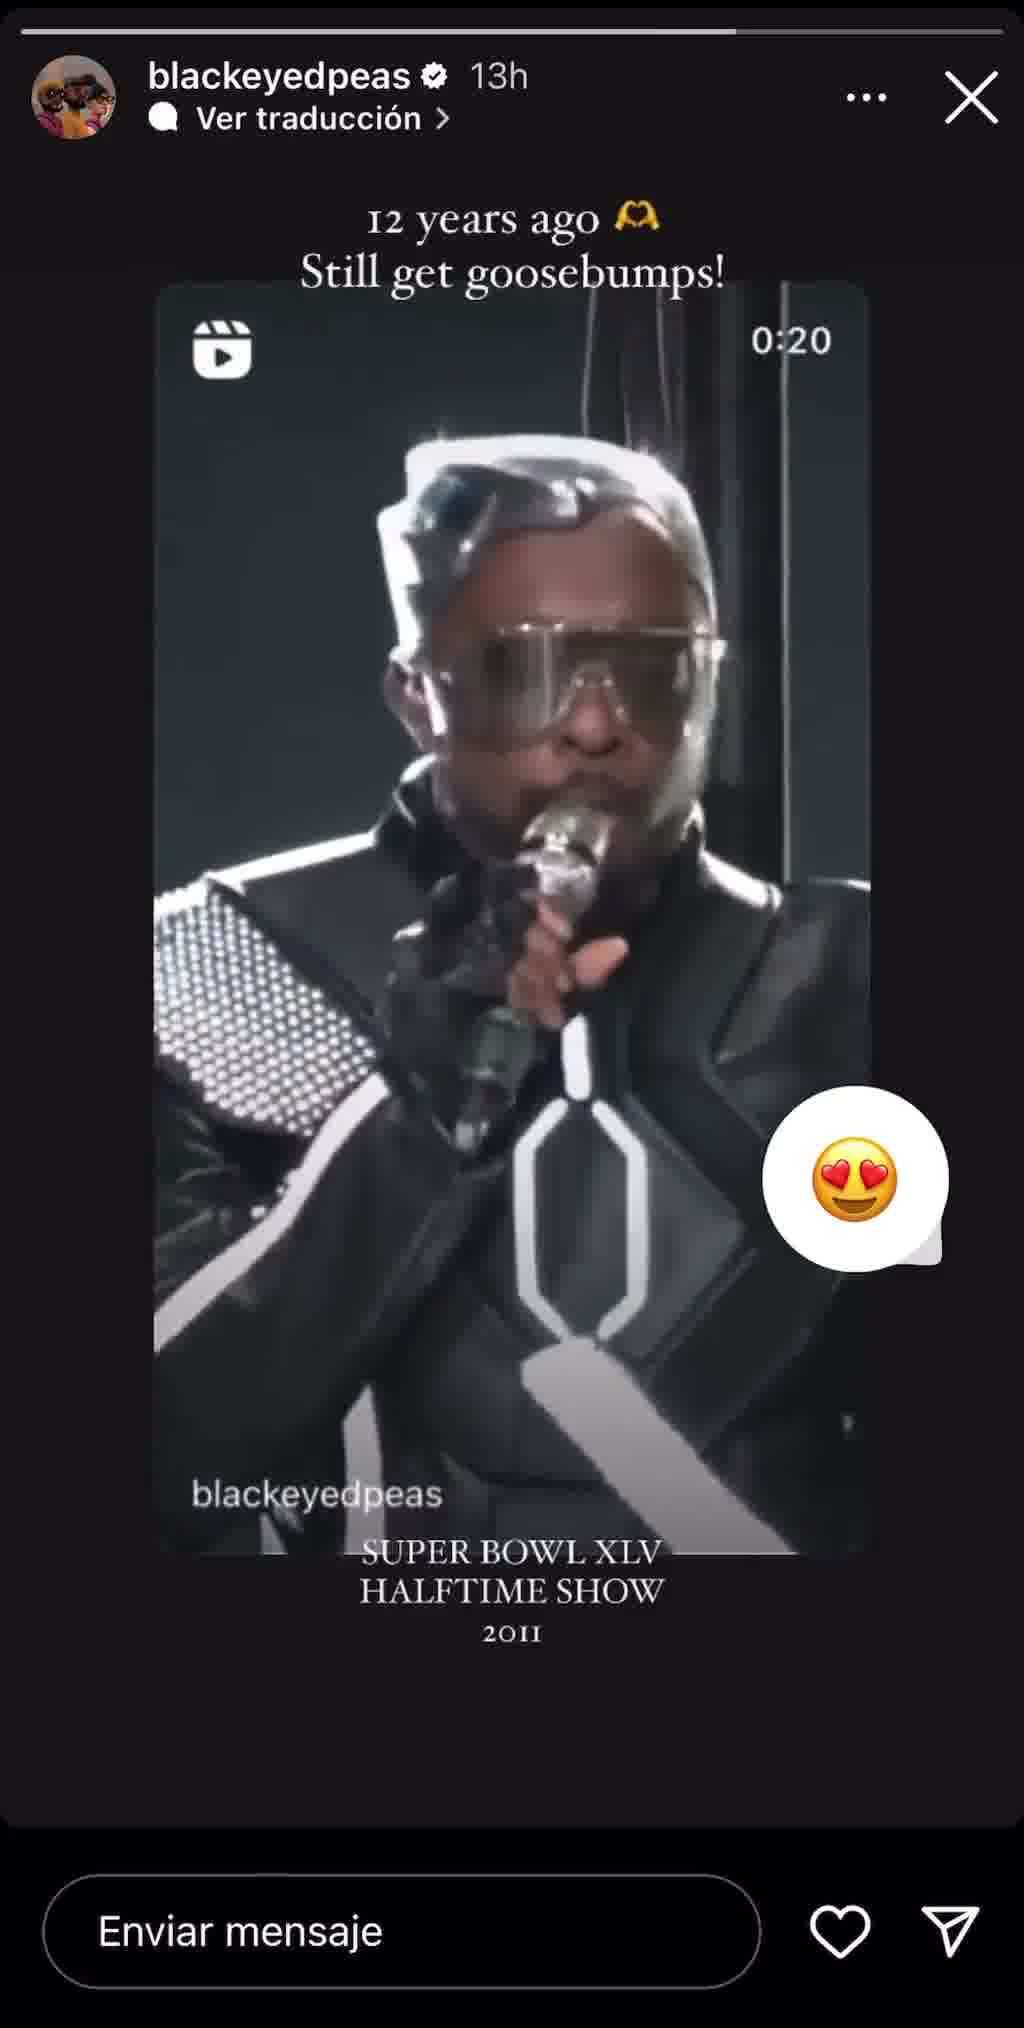 Black Eyed Peas rememora uno de los momentos más icónicos de su carrera